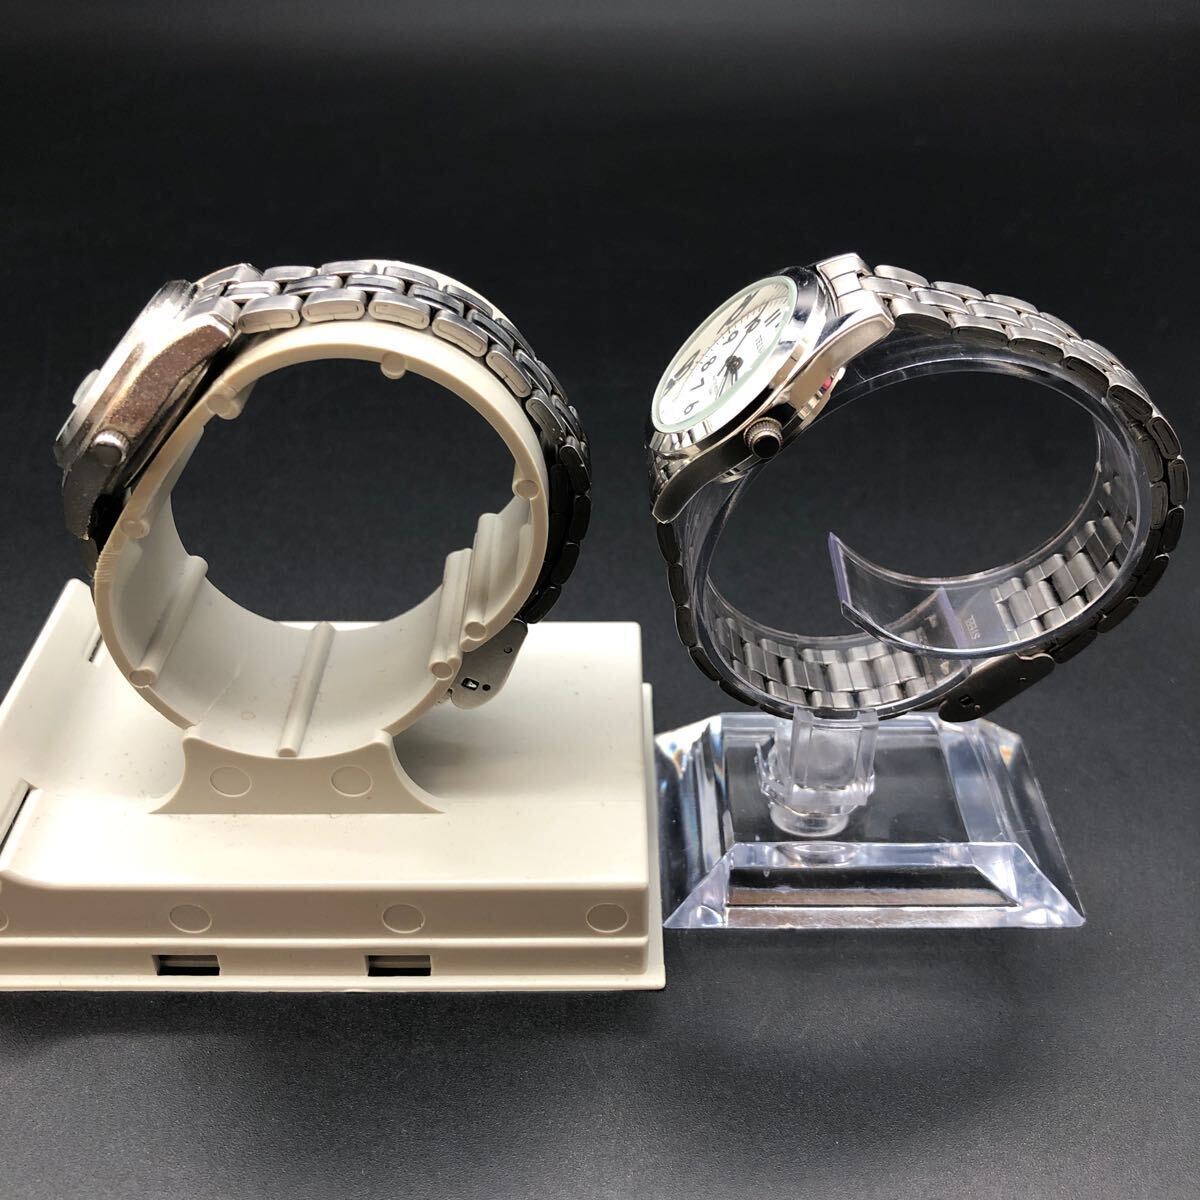 即決 J-AXIS TELVA 腕時計 2本セット_画像3